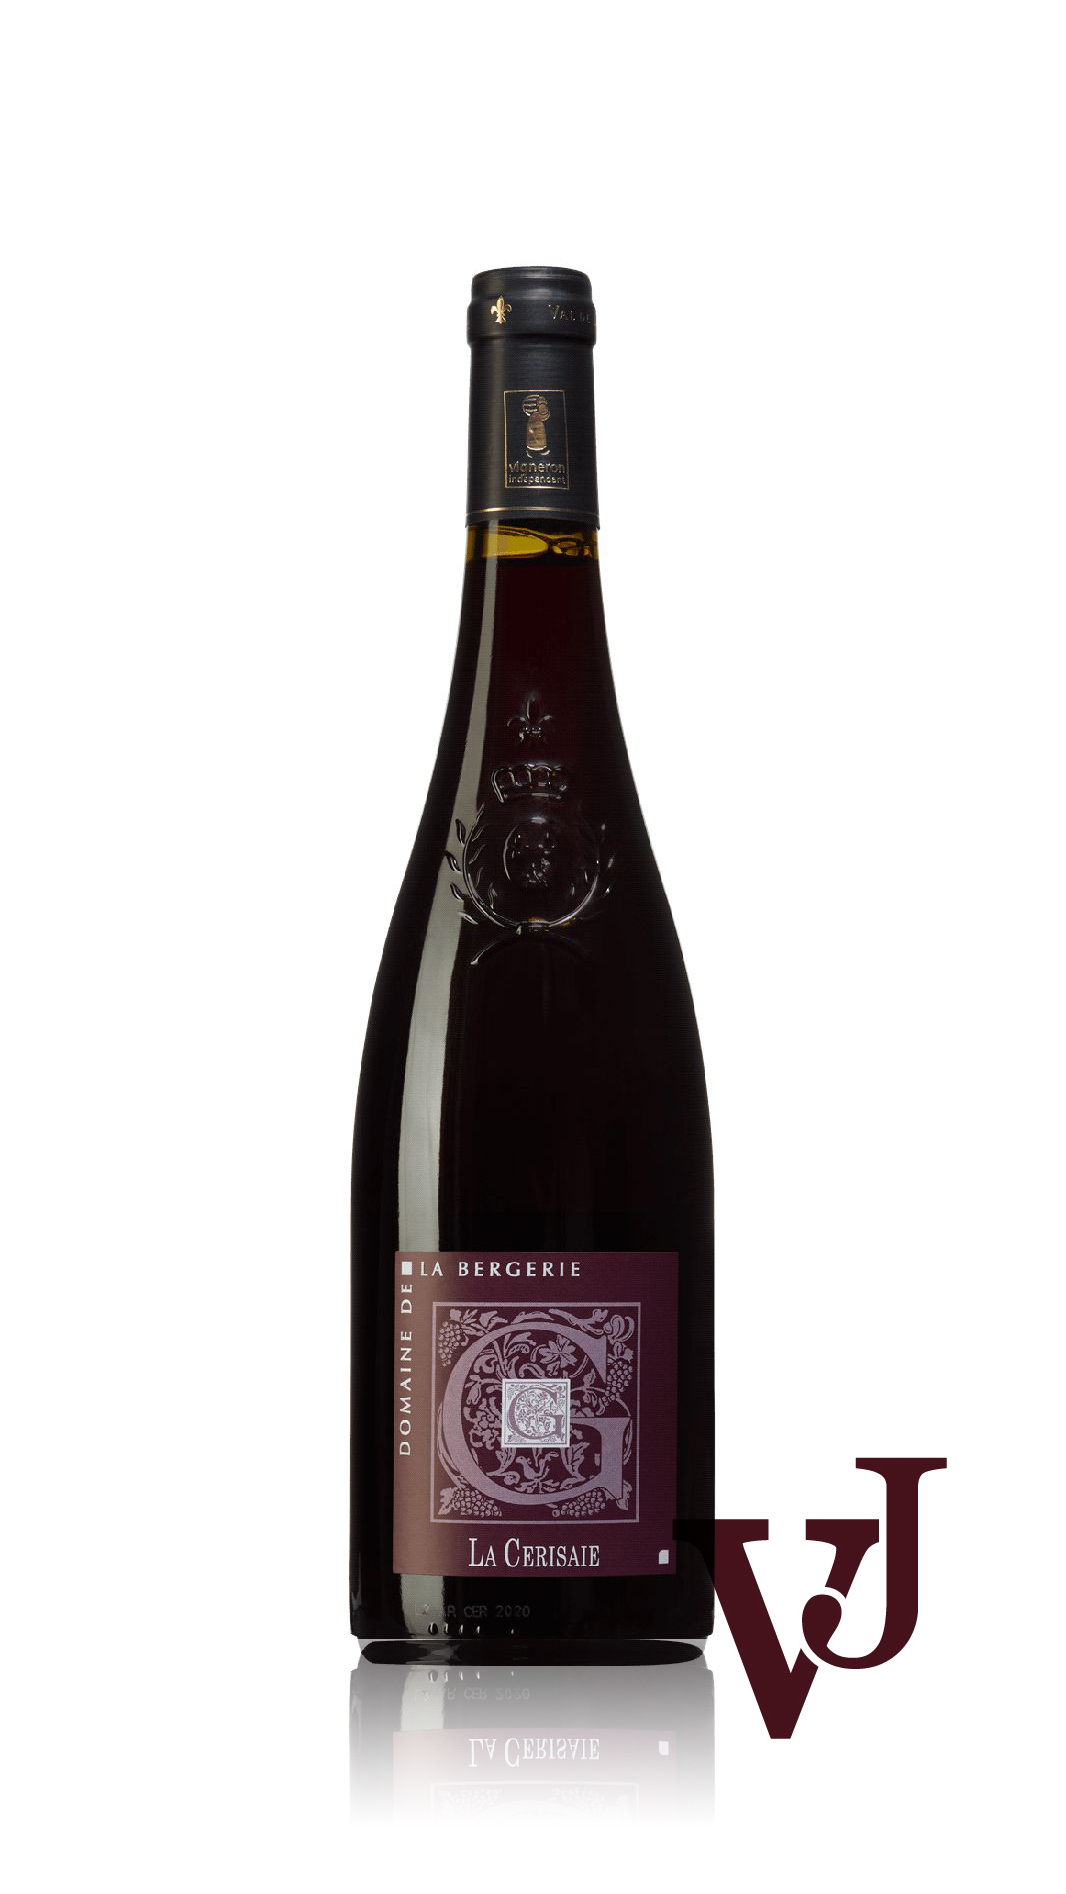 Rött Vin - La Cerisaie artikel nummer 9468601 från producenten Domaine de la Bergerie från området Frankrike